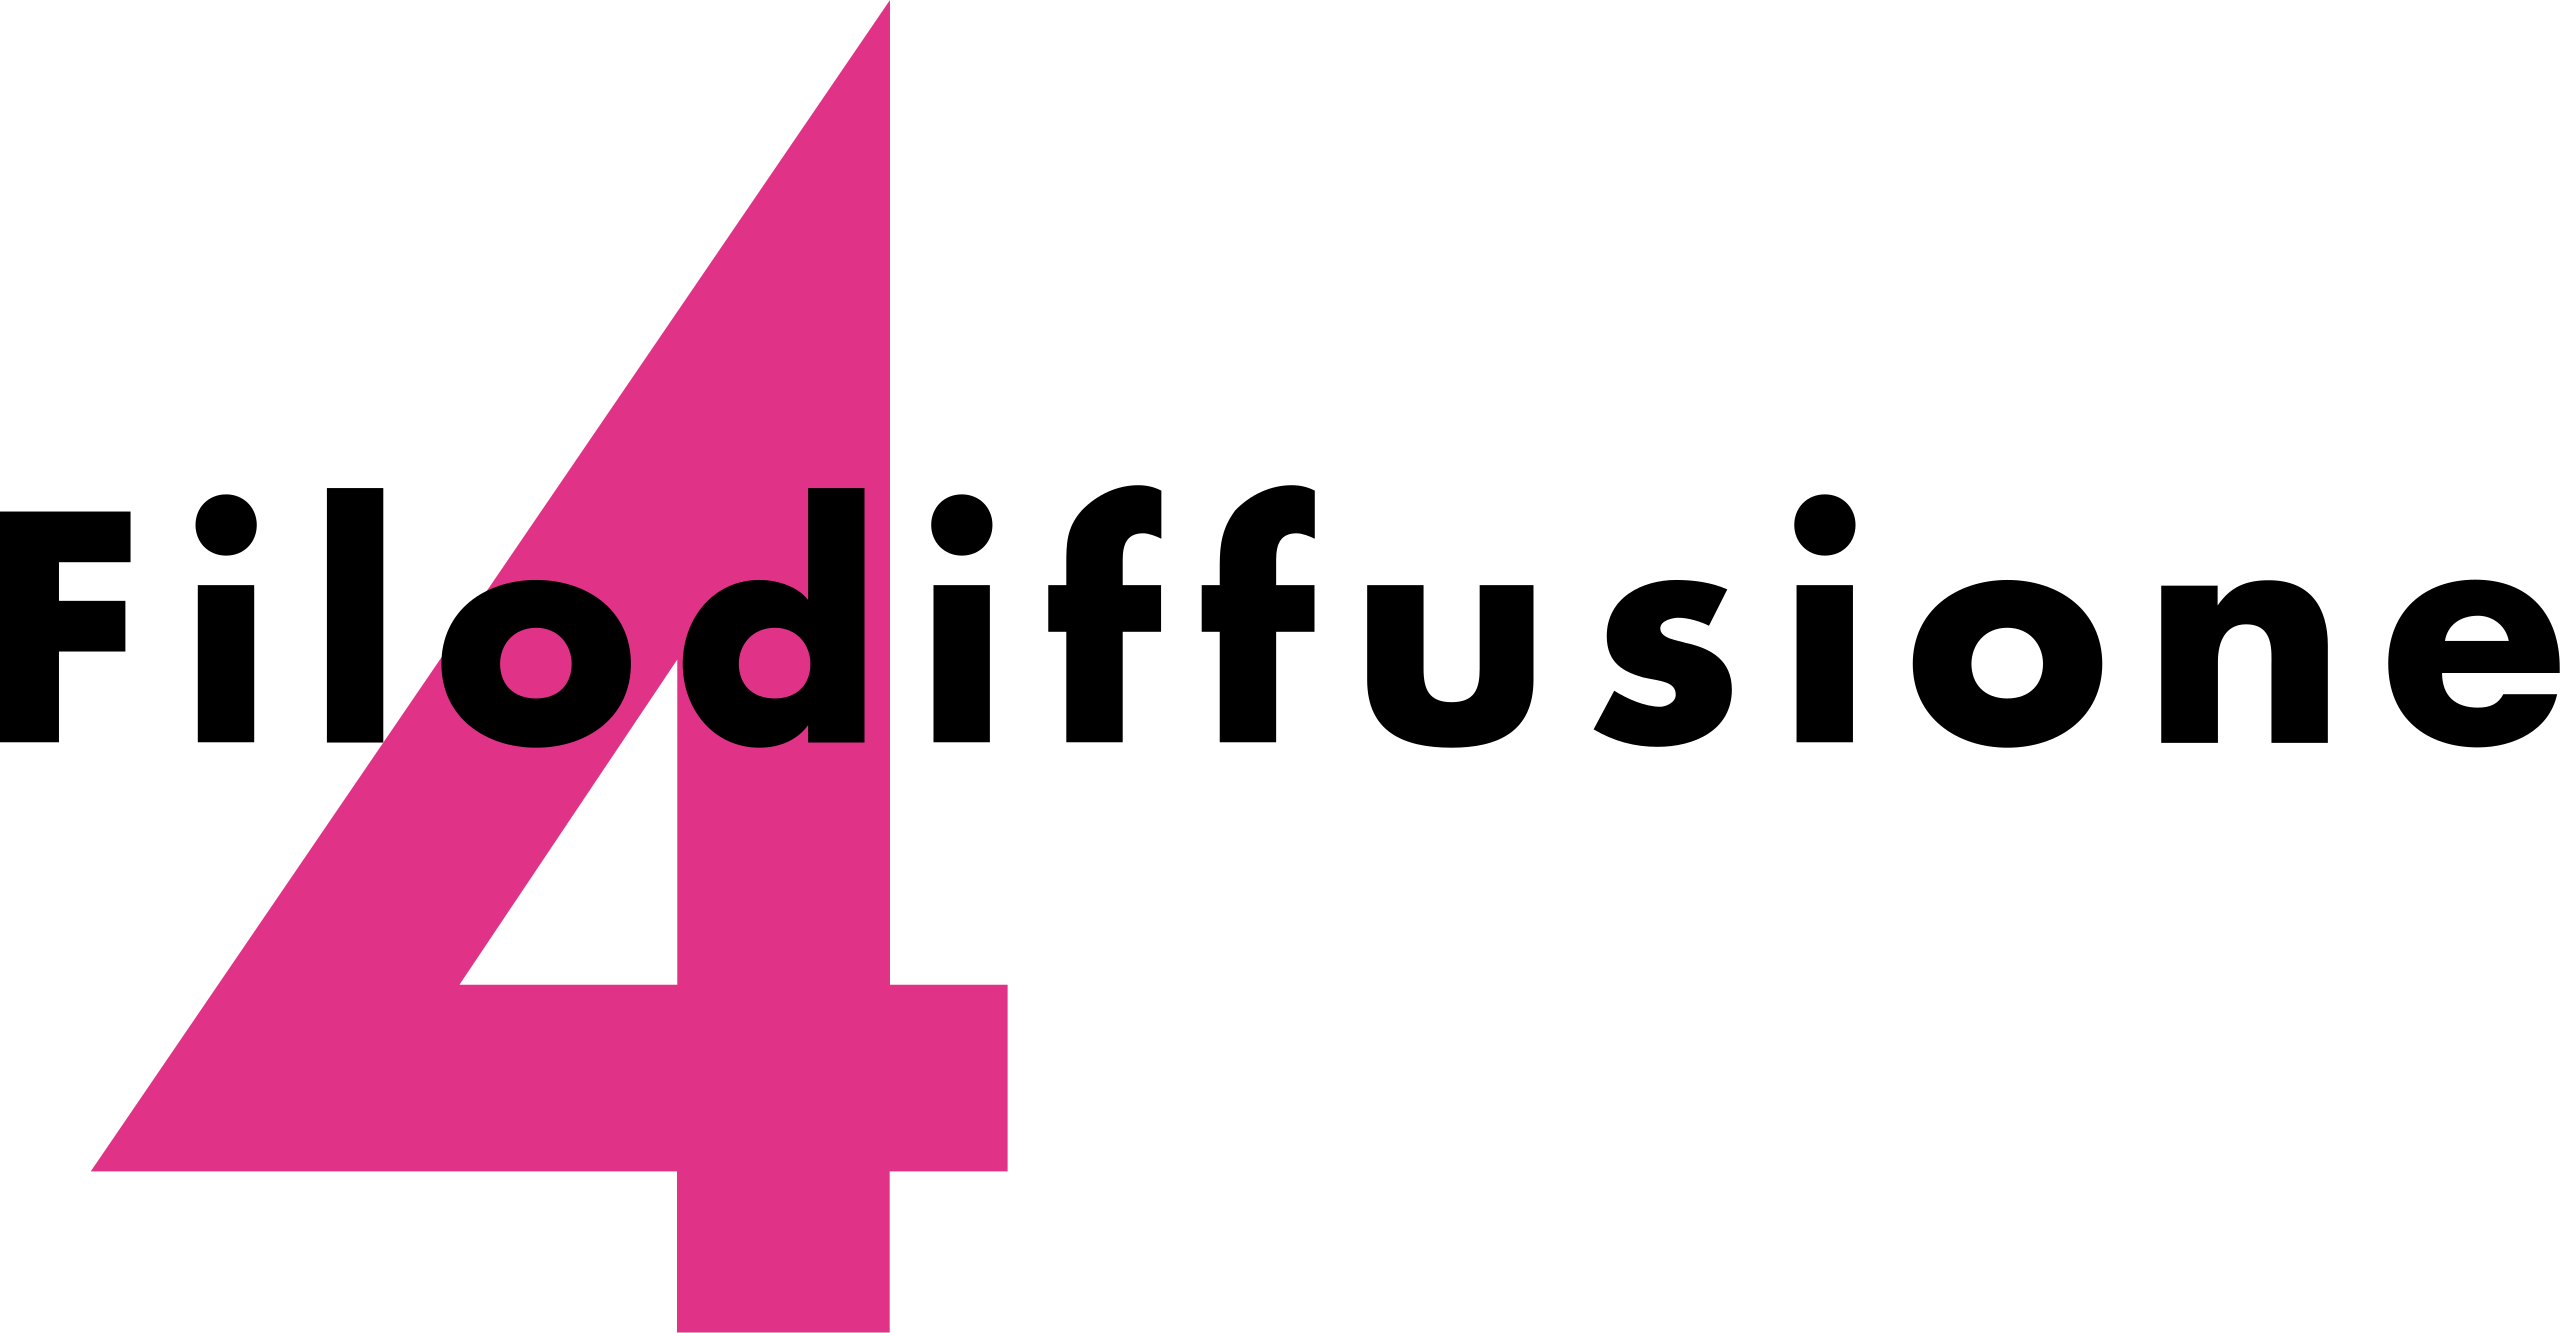 File:E4 (channel) logo.svg - Wikipedia